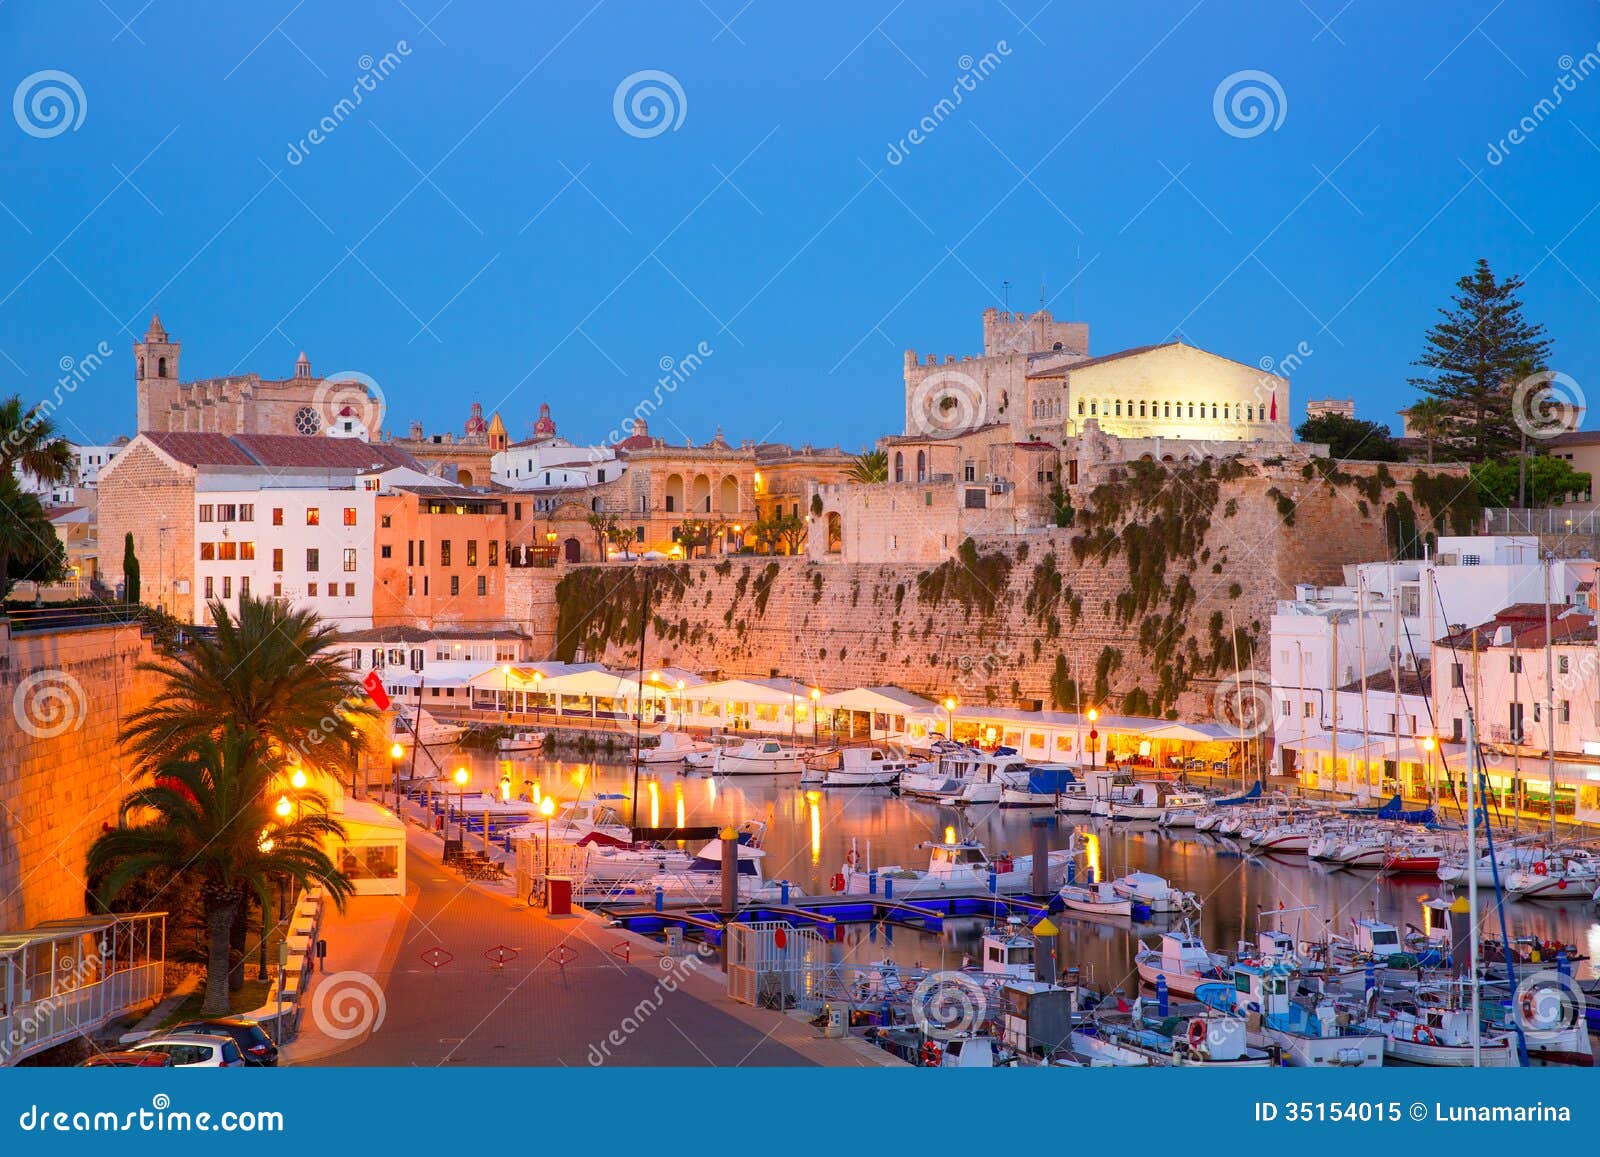 ciutadella menorca marina port sunset town hall and cathedral